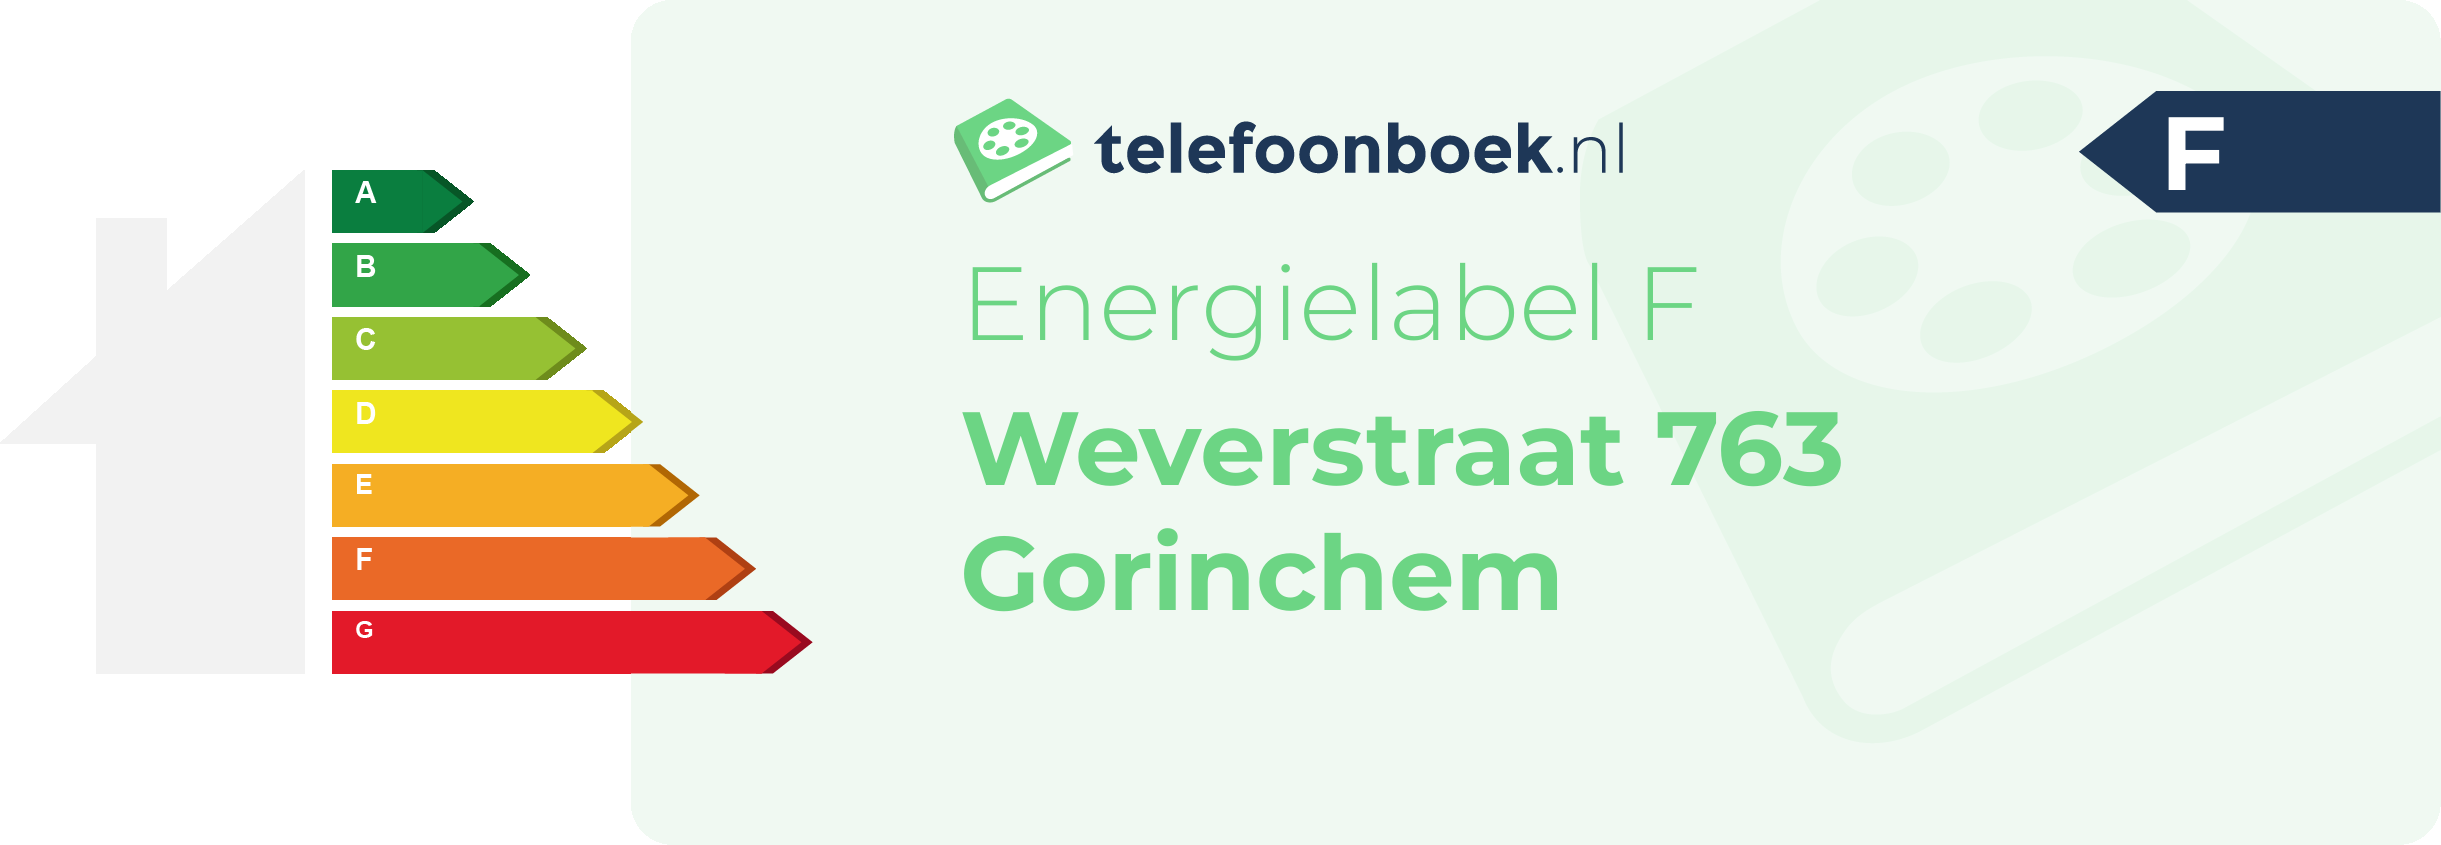 Energielabel Weverstraat 763 Gorinchem